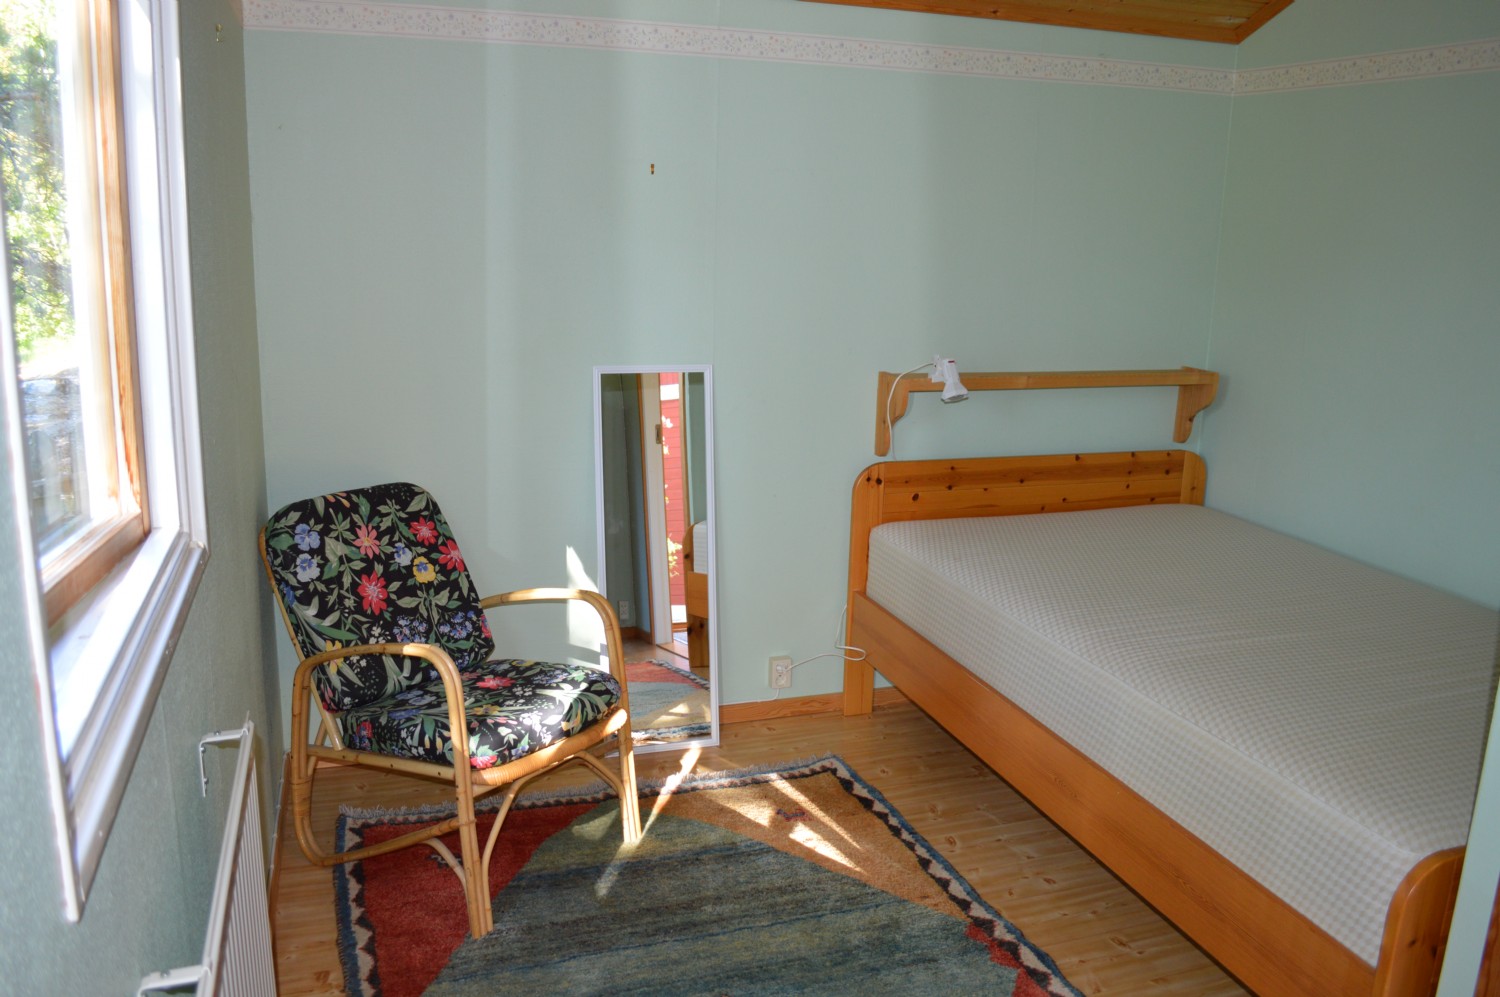 Sovrum 2 gststuga/ Bed room 2 guest house 